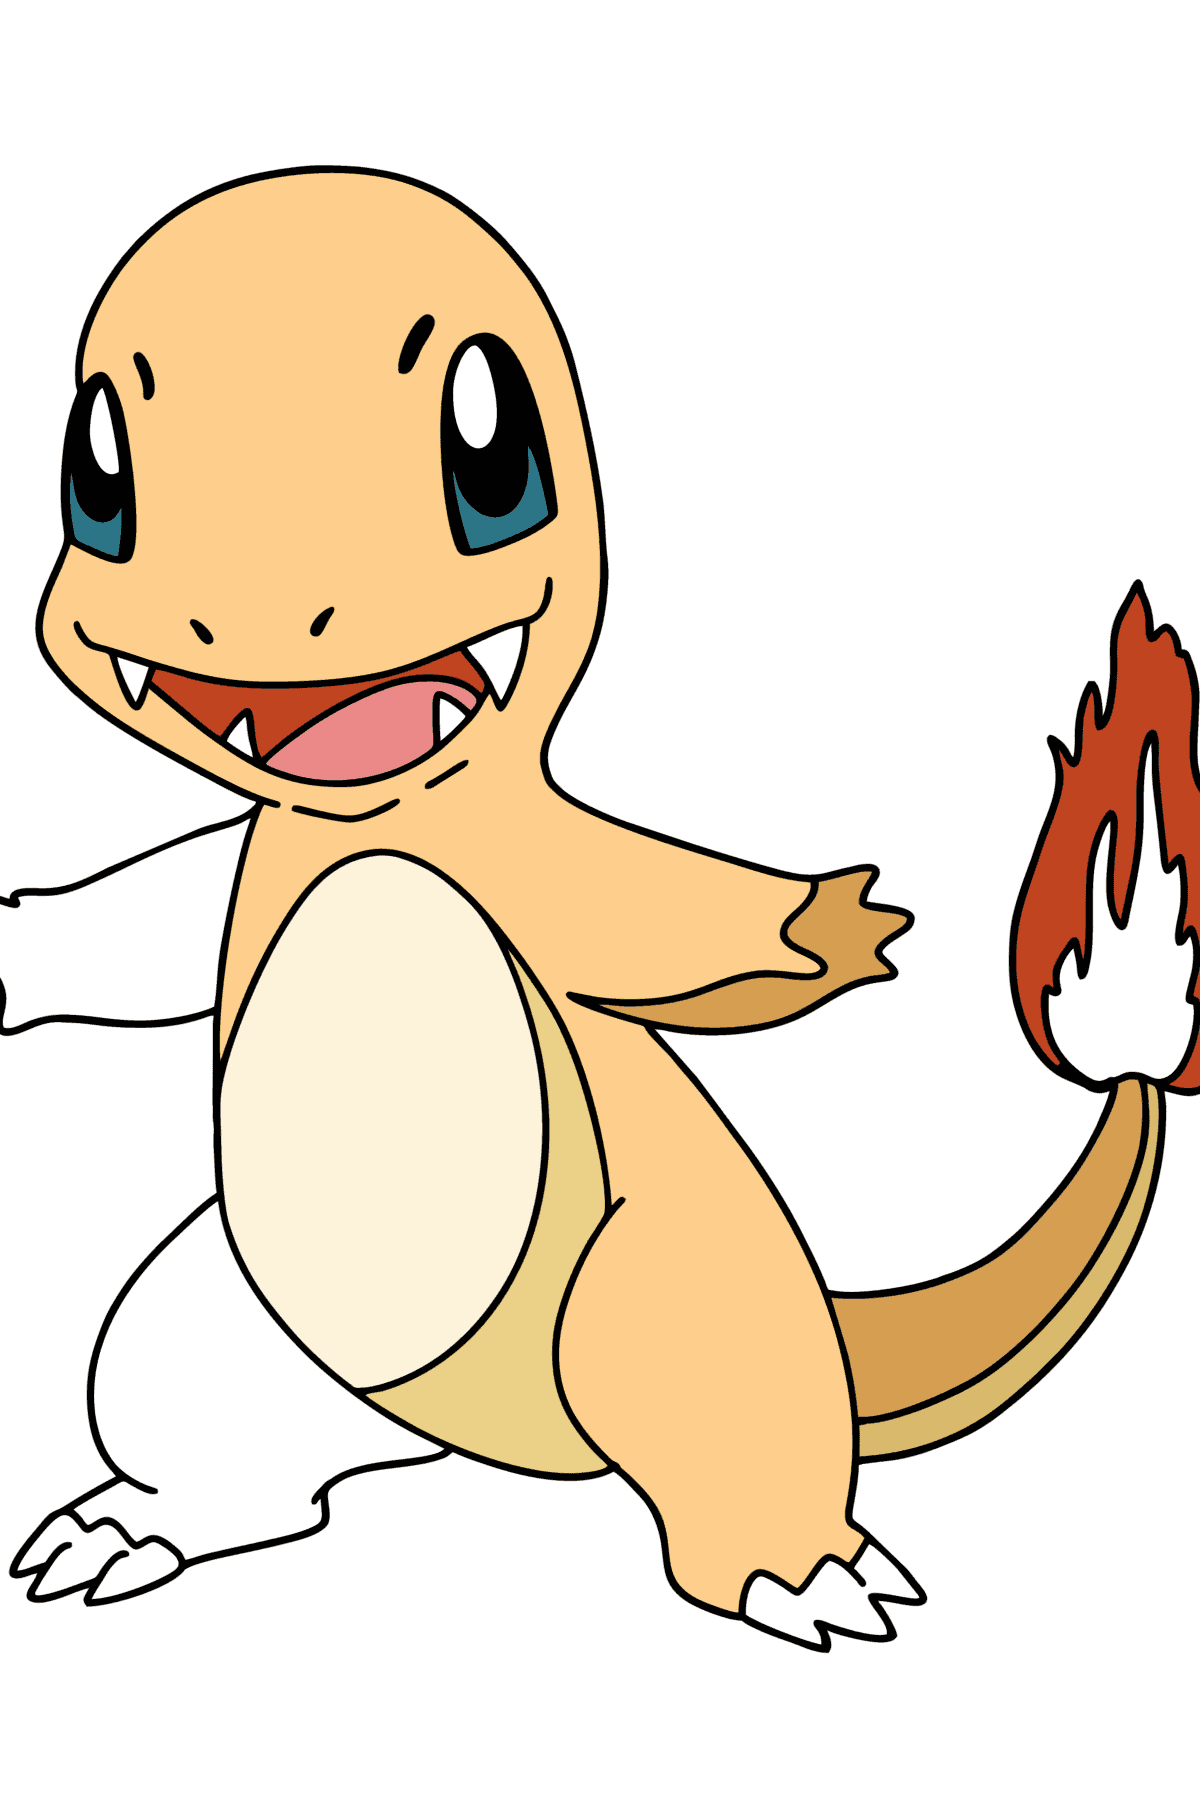 Ausmalbild Pokémon Go Charmander - Malvorlagen für Kinder